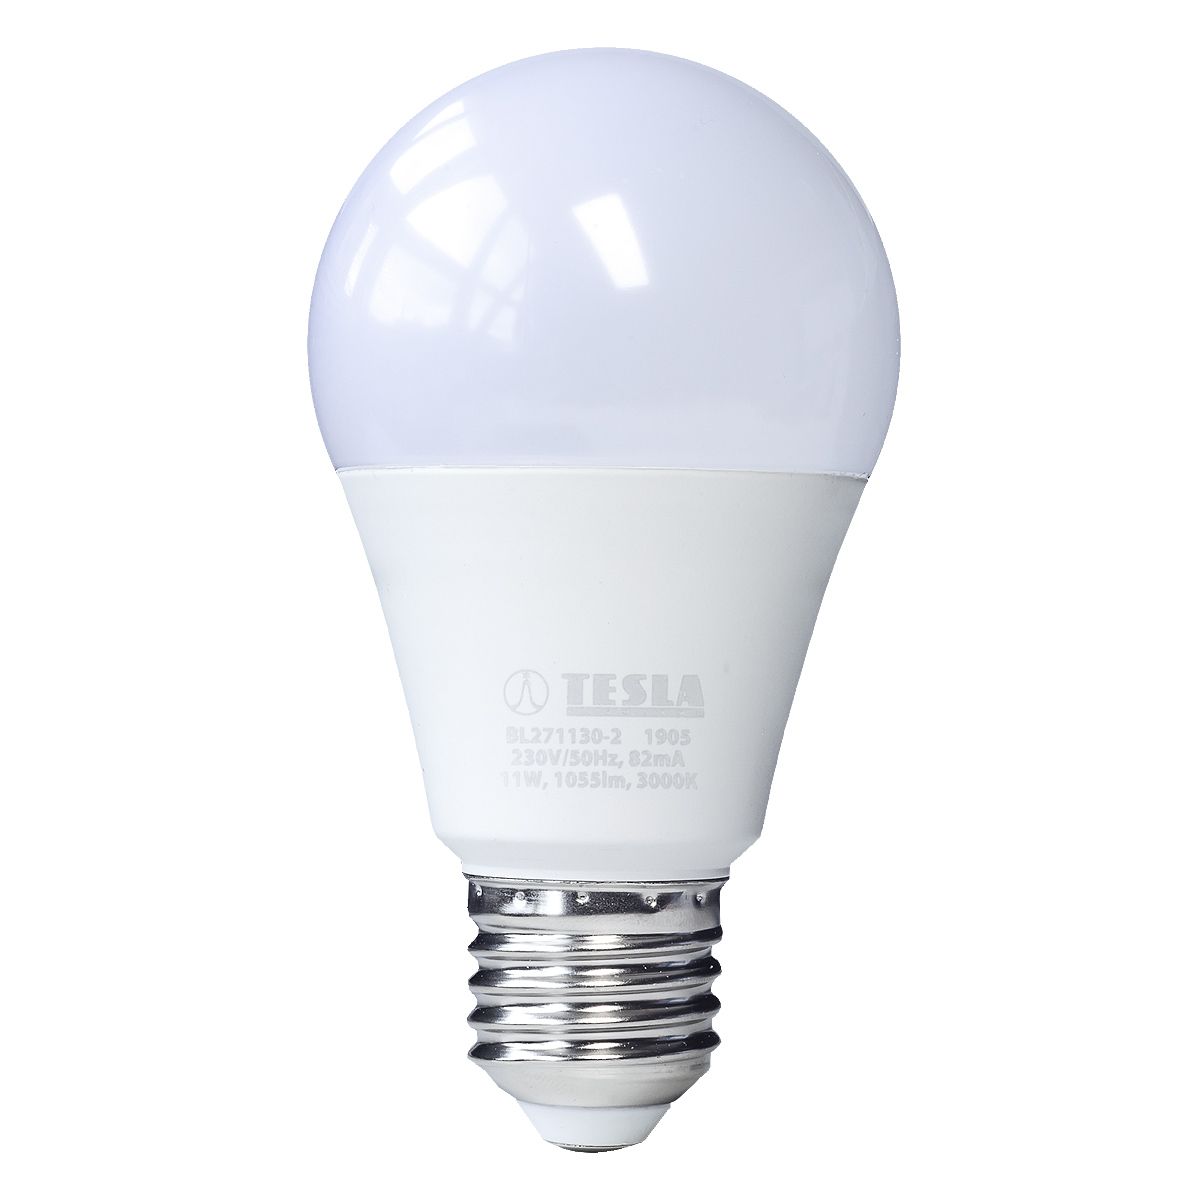 Tesla - LED BULB E27, 11W, 230V, 1055lm, 3000K, 220° Tesla Lighting